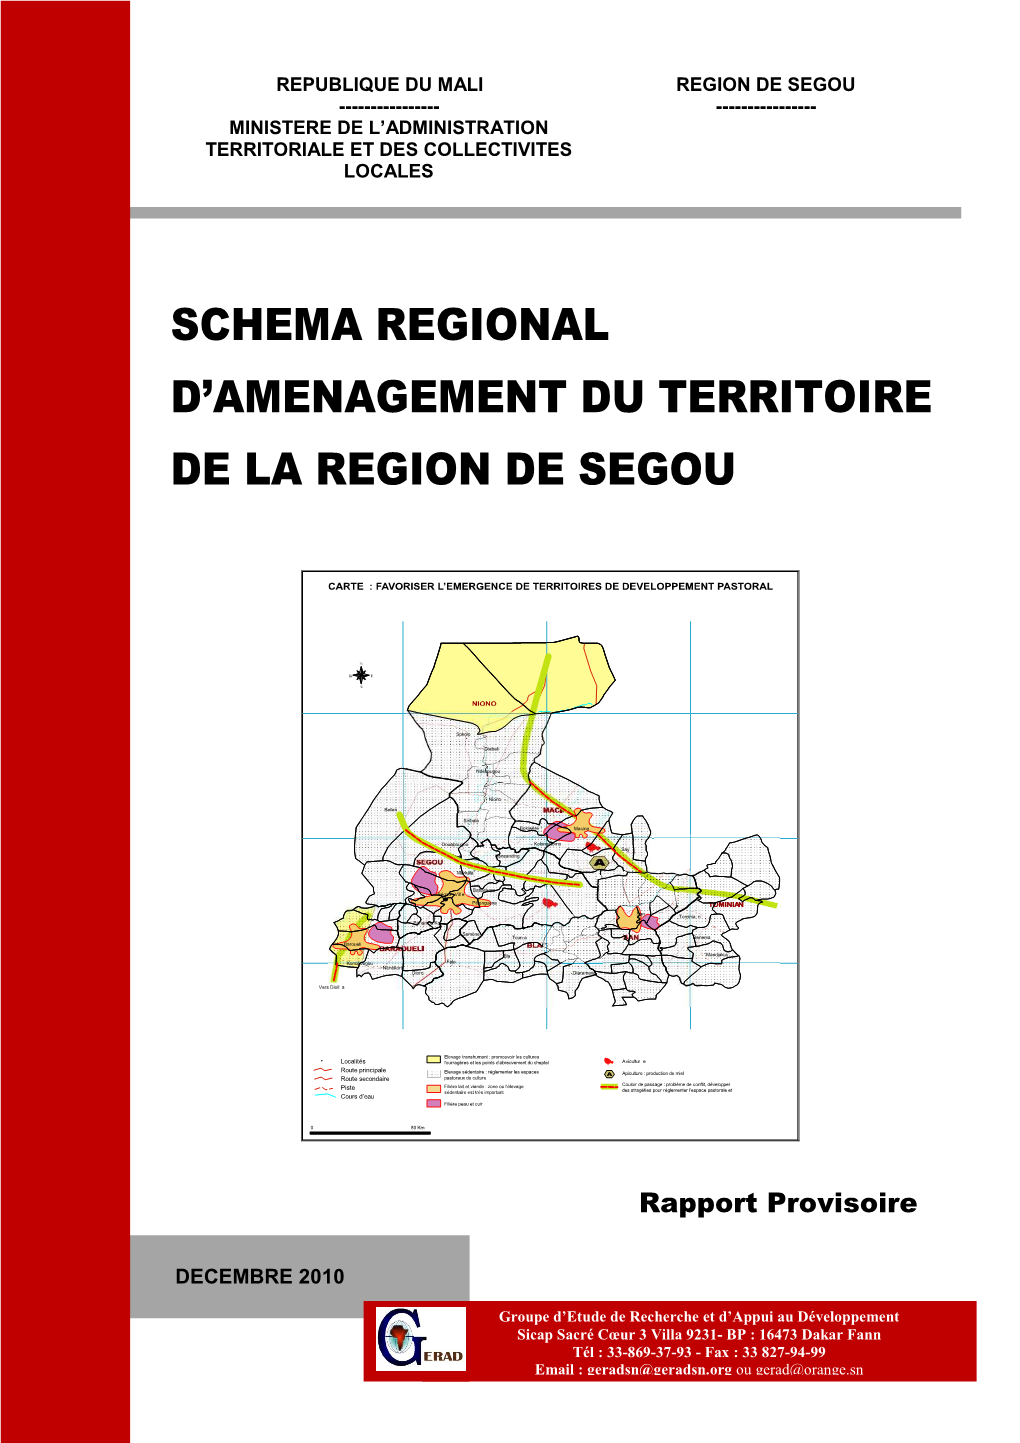 Schema Regional D'amenagement Du Territoire De La Region De Segou